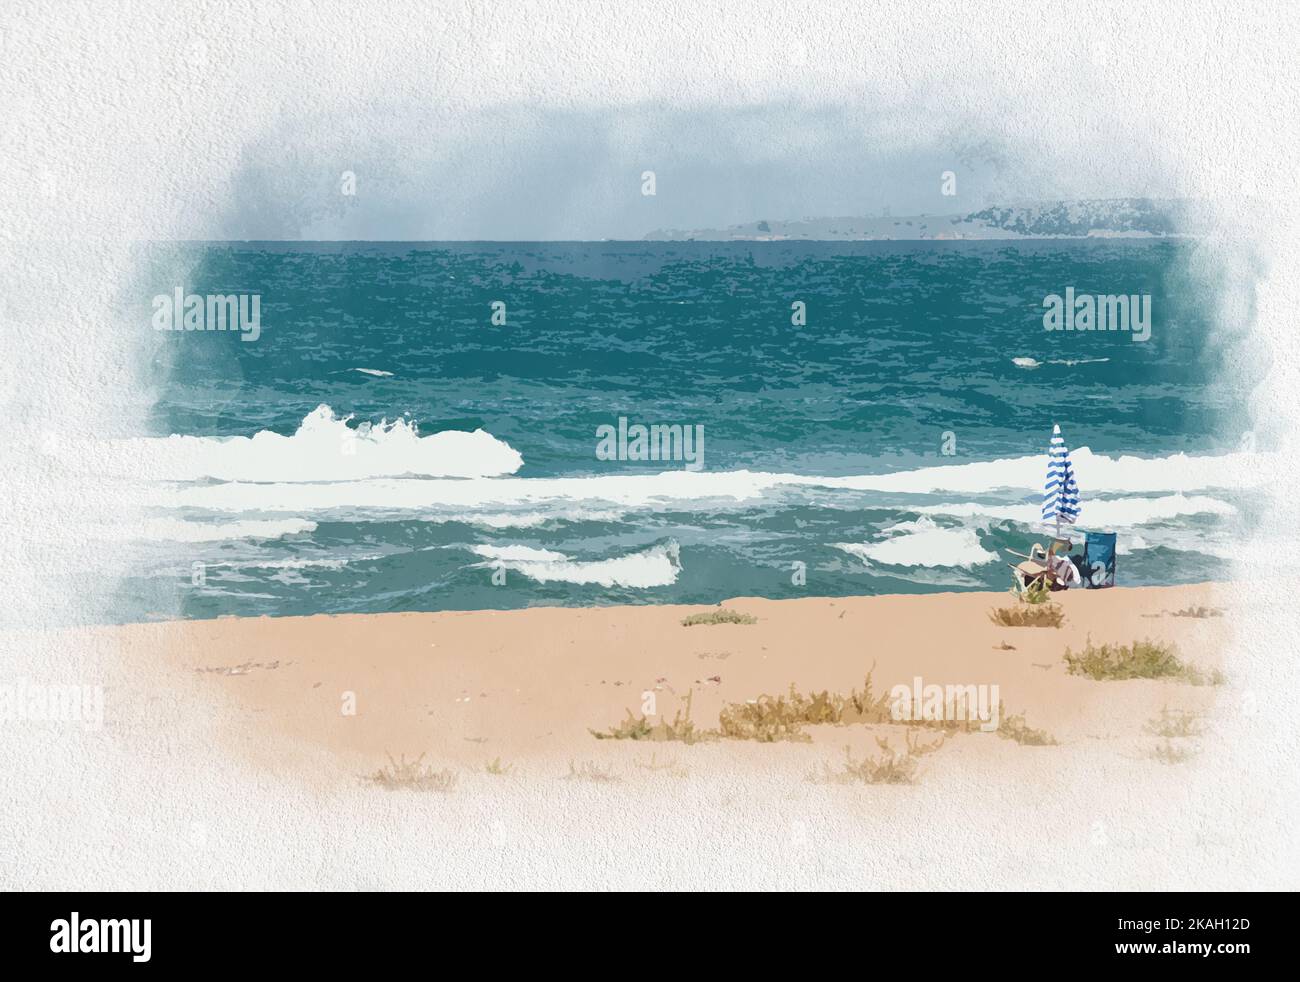 Aquarell Malerei Idee Konzept auf Leinwand. Raues Meer, Strand, Sonnenschirm und Stuhl. Friedlicher Blick auf die Umgebung. Fauler Tag. Sommerliche Stimmung. Keine Menschen, niemand. Stockfoto